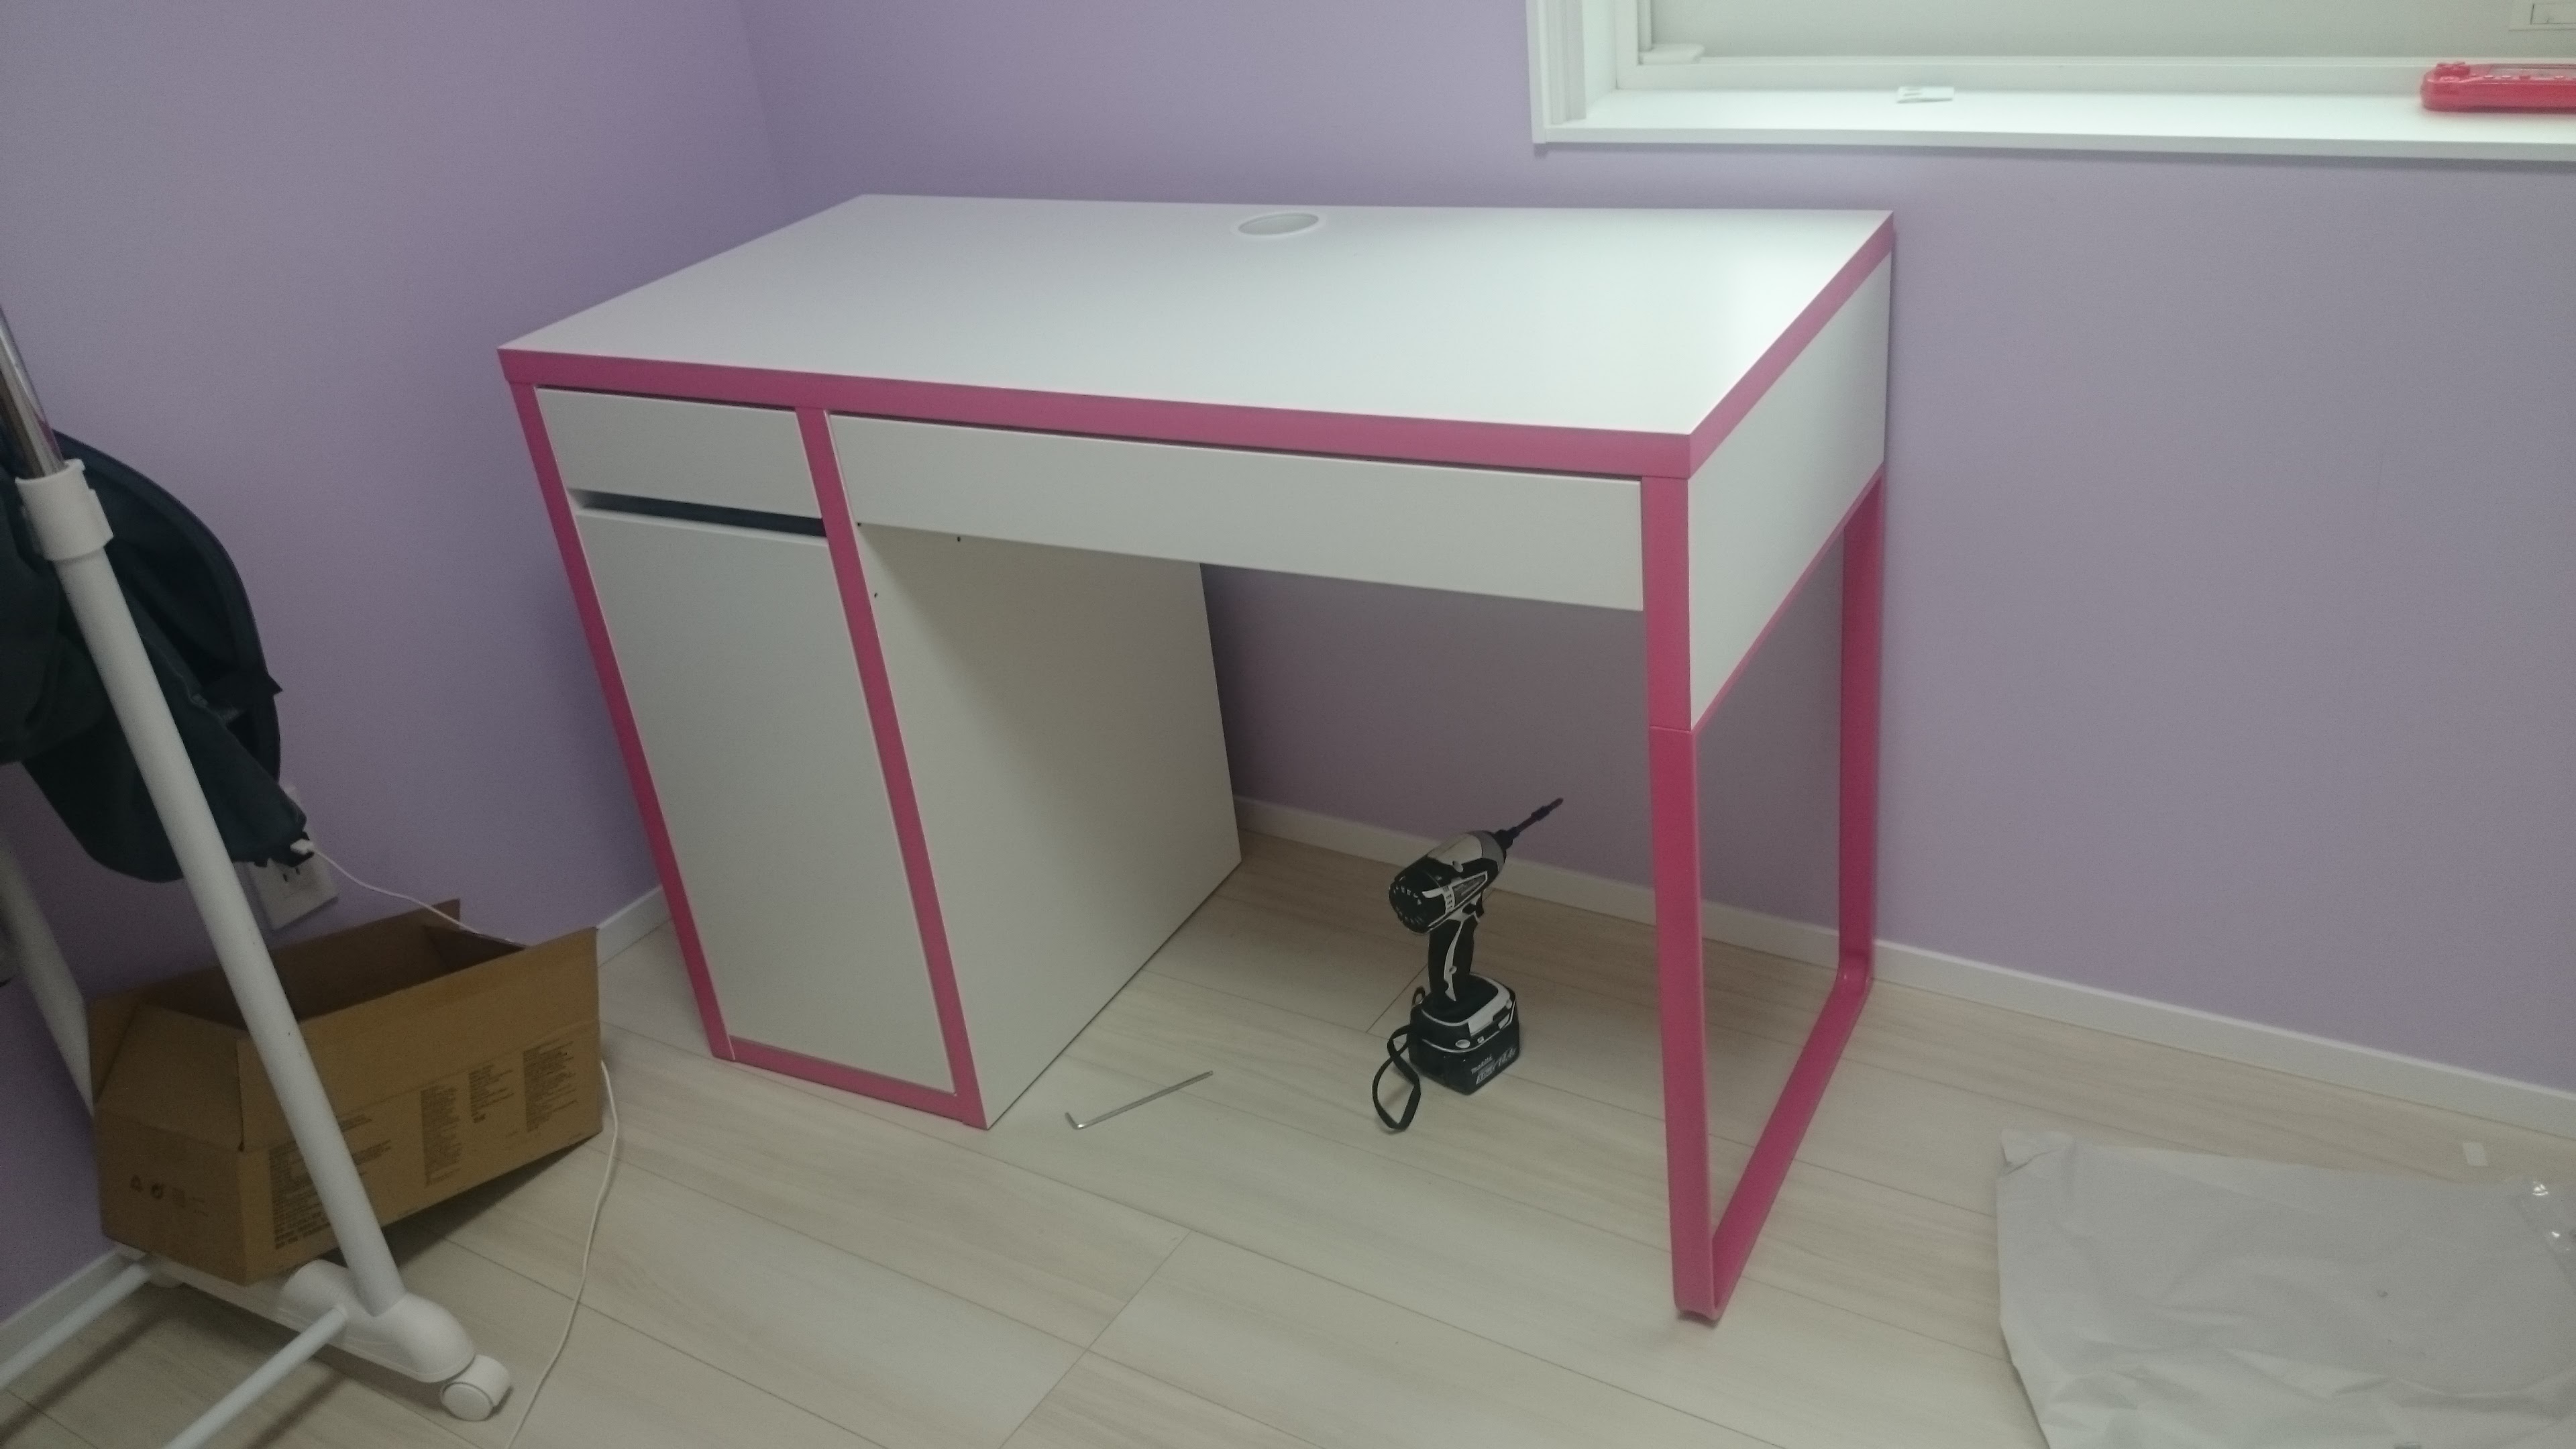 組立編 Ismart Ikea 女の子の子供部屋にイケアの机と椅子を入れました ピンクの学習デスク チェアと引き出しユニット Smart House Cool Life